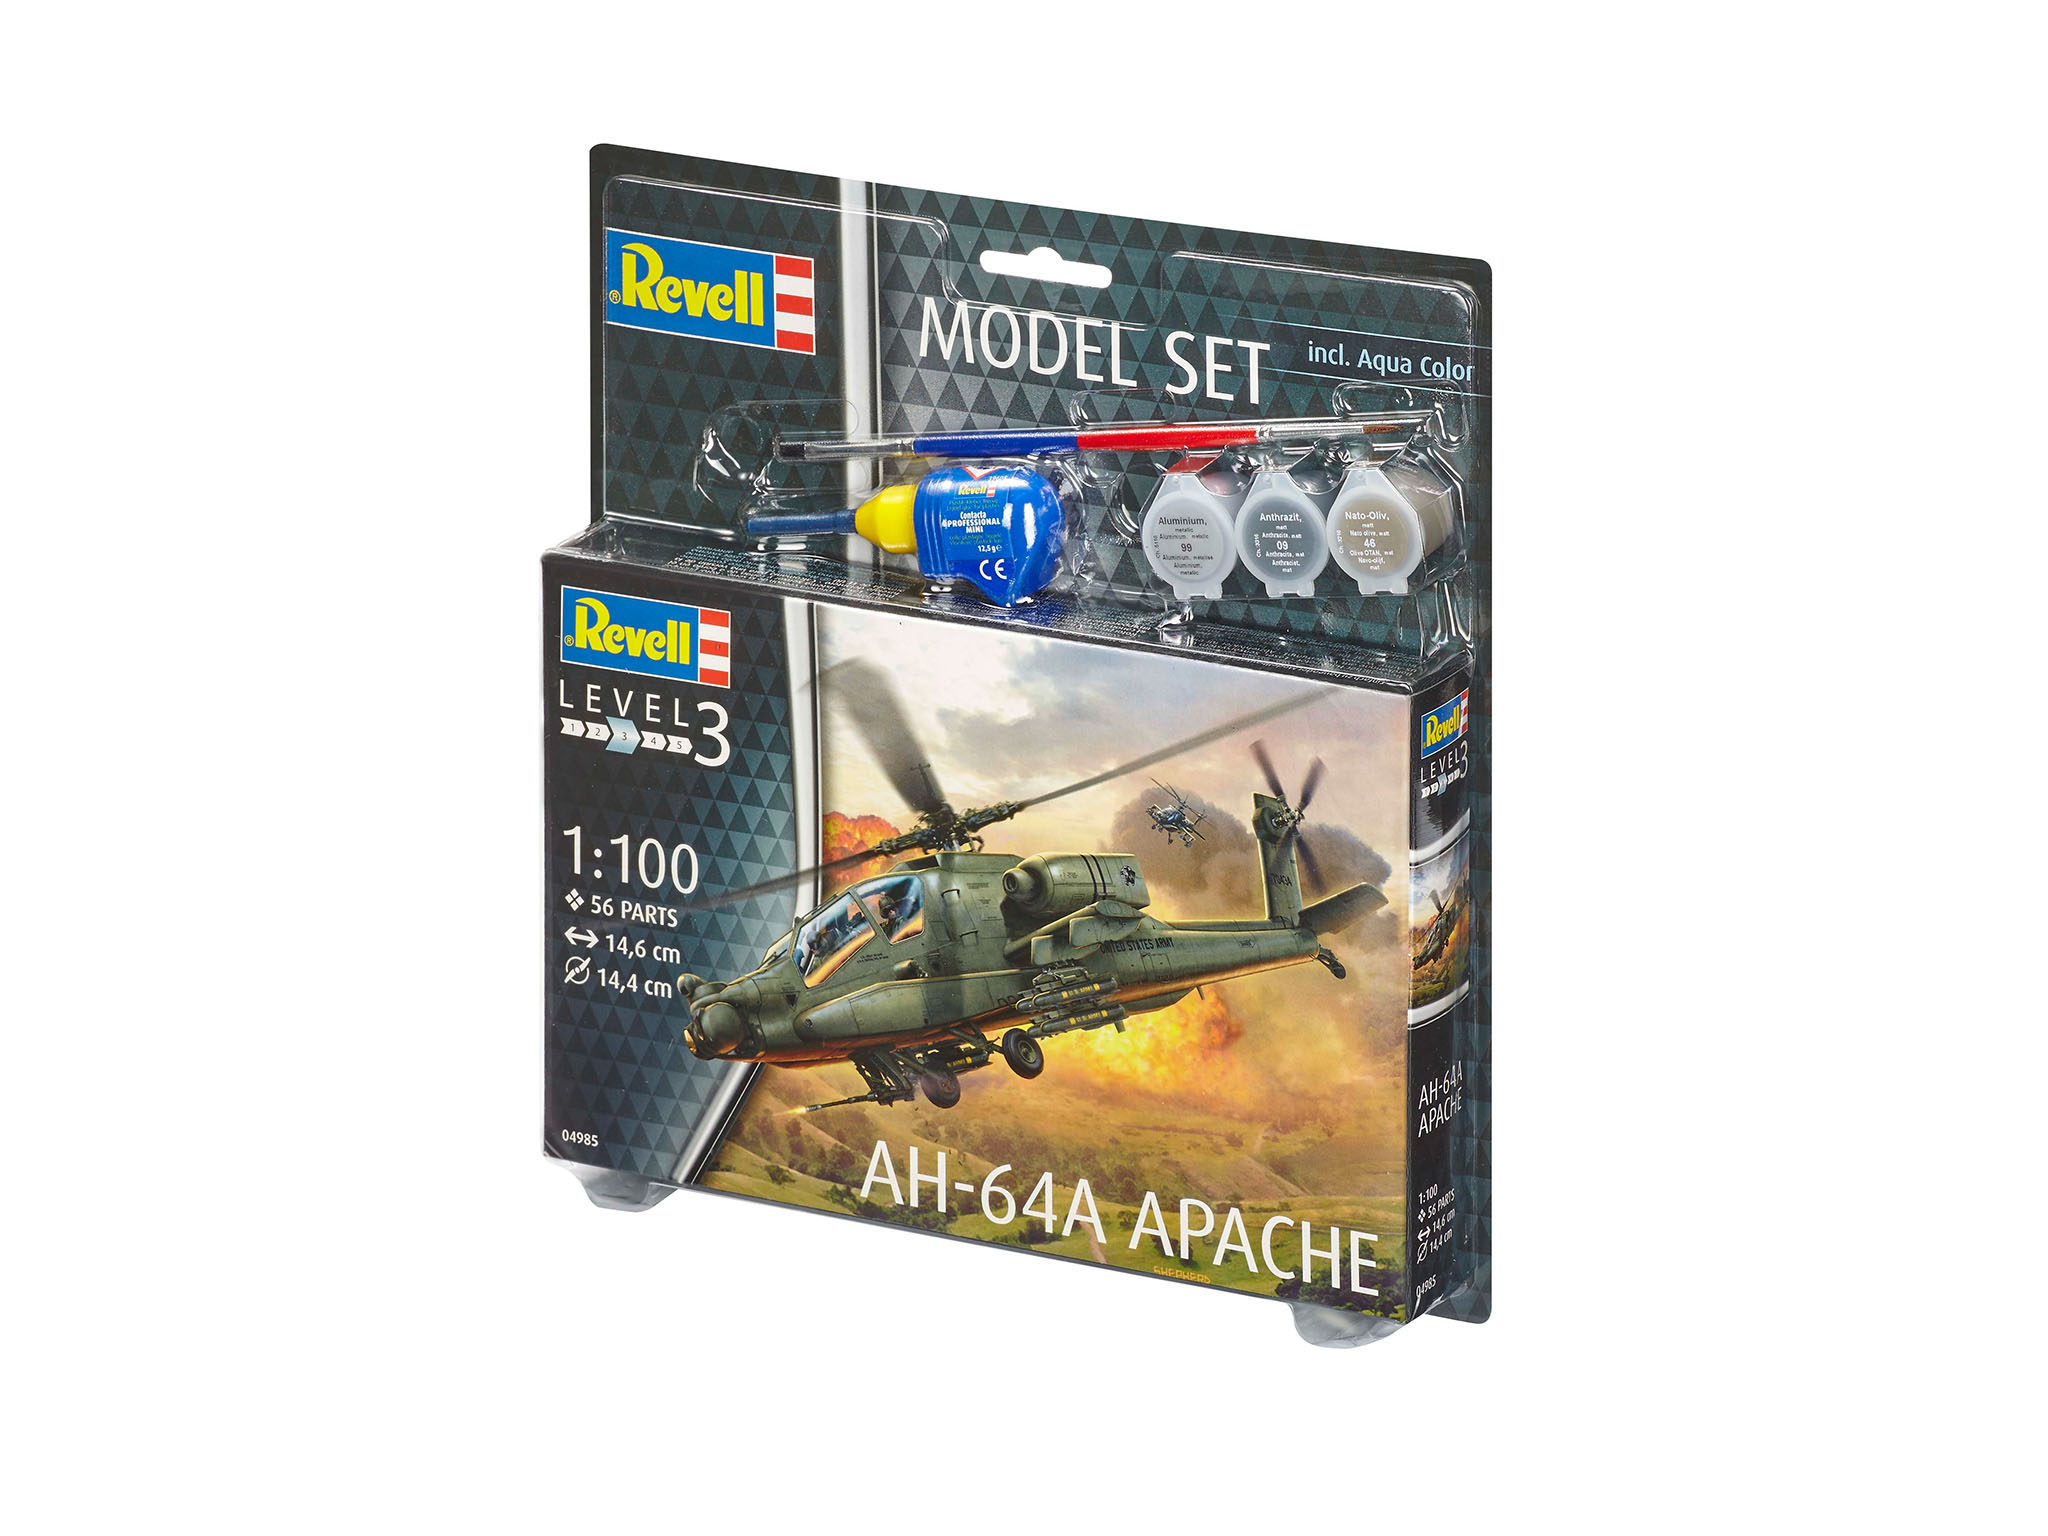 Apache AH-64A REVELL Mehrfarbig Set Model Spielwaren,